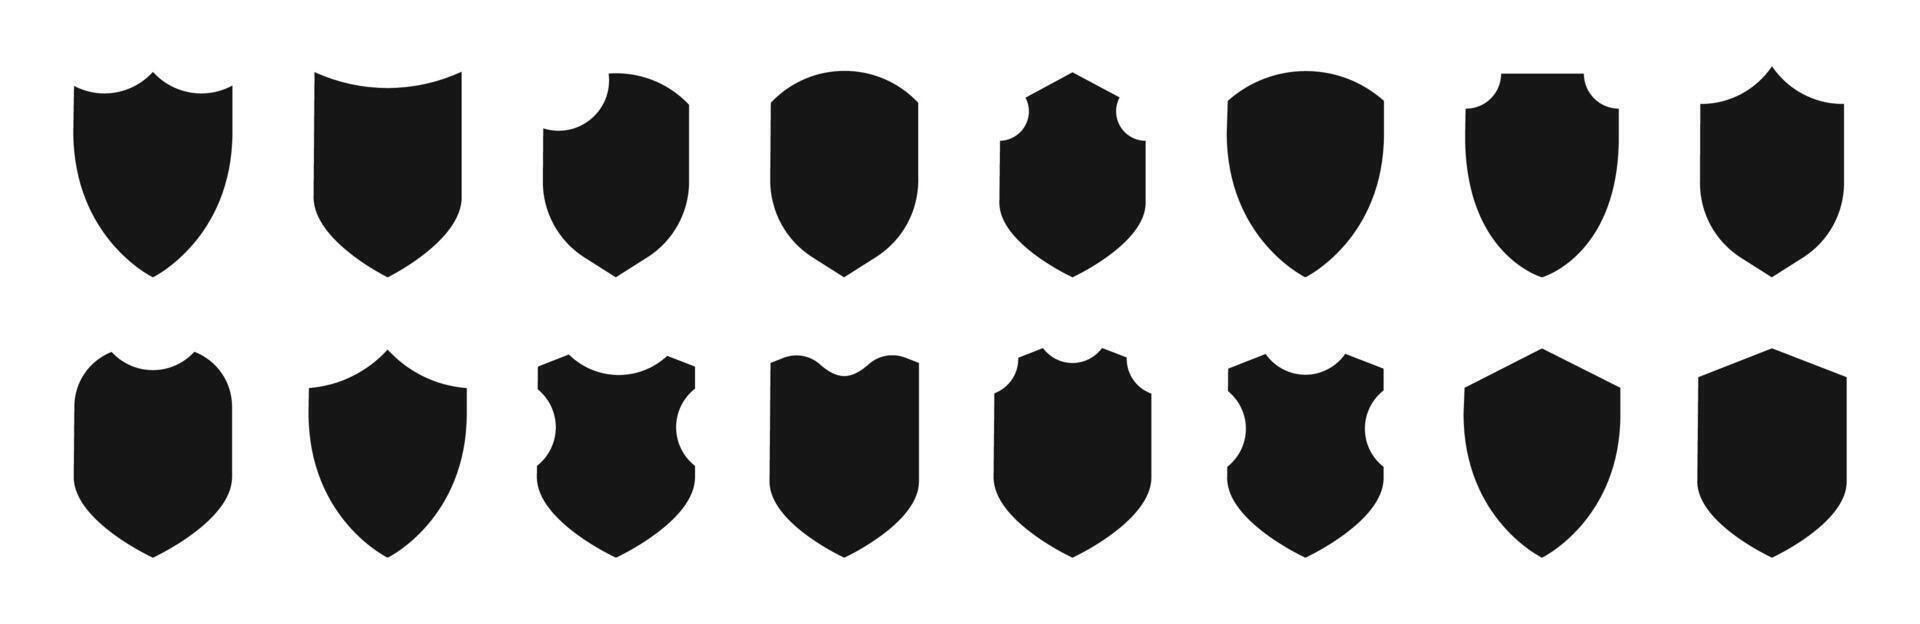 proteger icono colocar. proteccion simbolos proteger proteger siluetas silueta estilo iconos vector